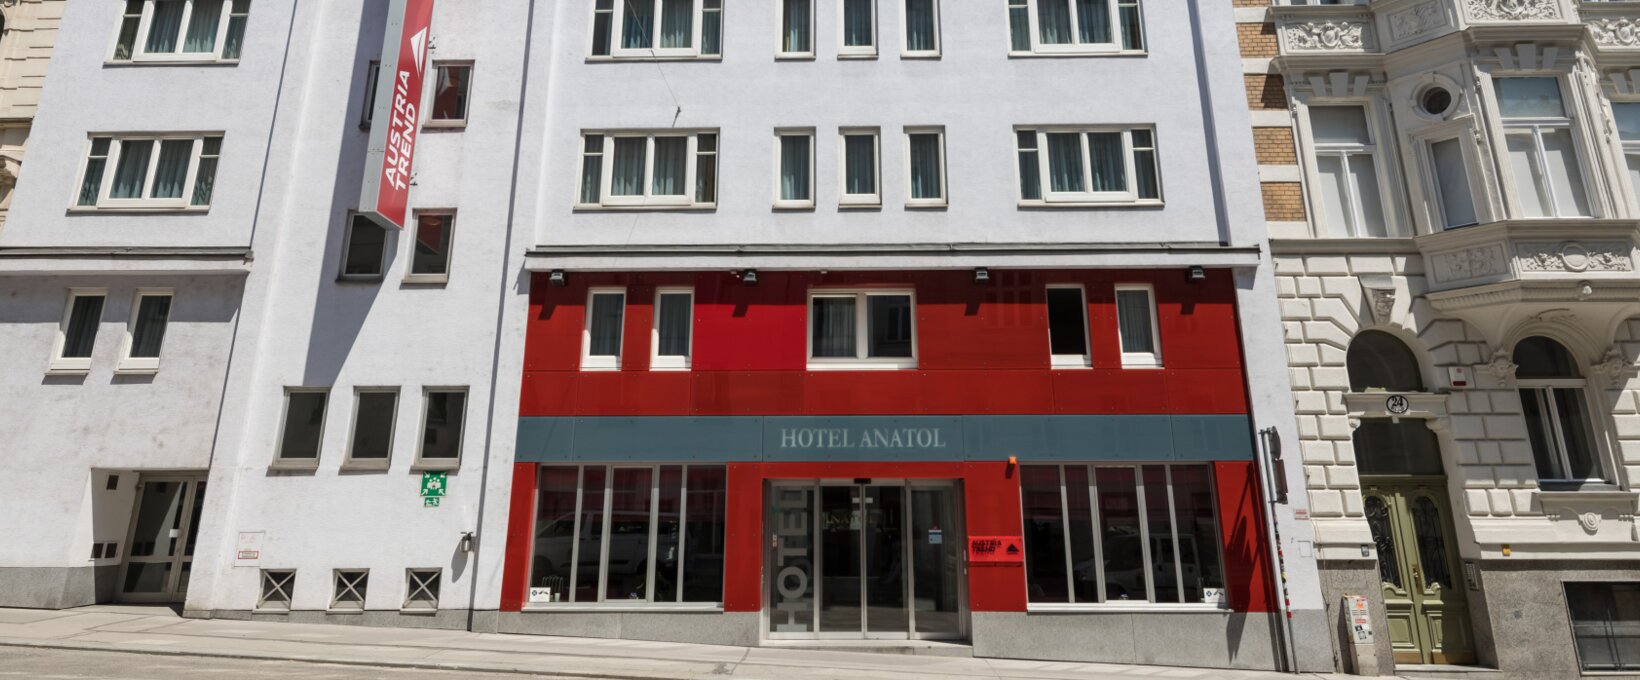 Außenansicht Hotel Eingang | Hotel Anatol in Wien